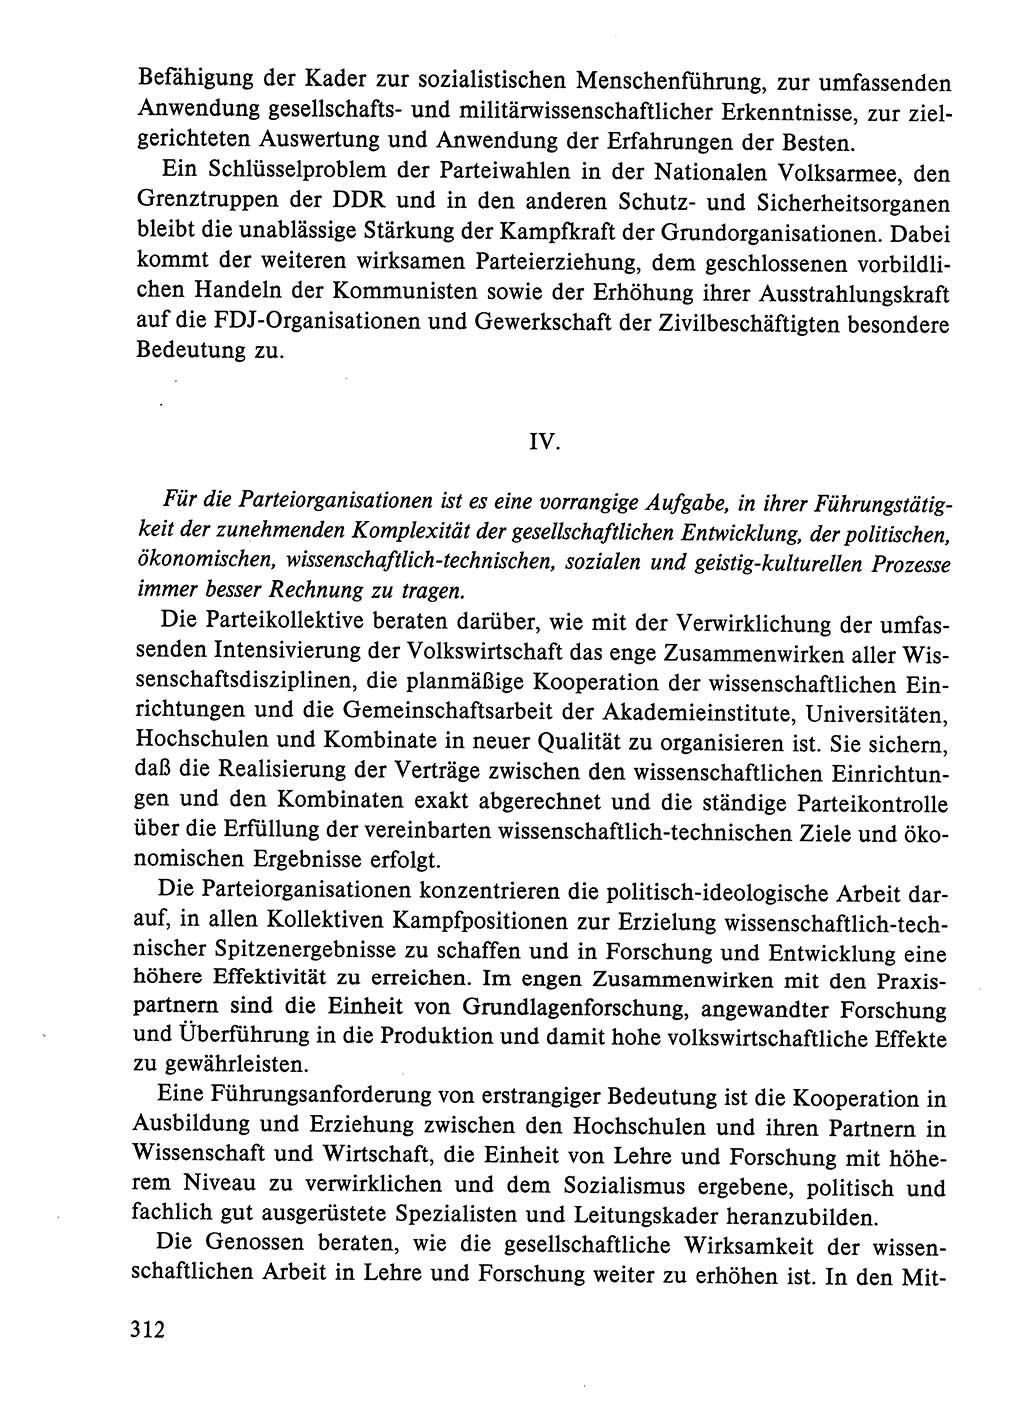 Dokumente der Sozialistischen Einheitspartei Deutschlands (SED) [Deutsche Demokratische Republik (DDR)] 1984-1985, Seite 115 (Dok. SED DDR 1984-1985, S. 115)